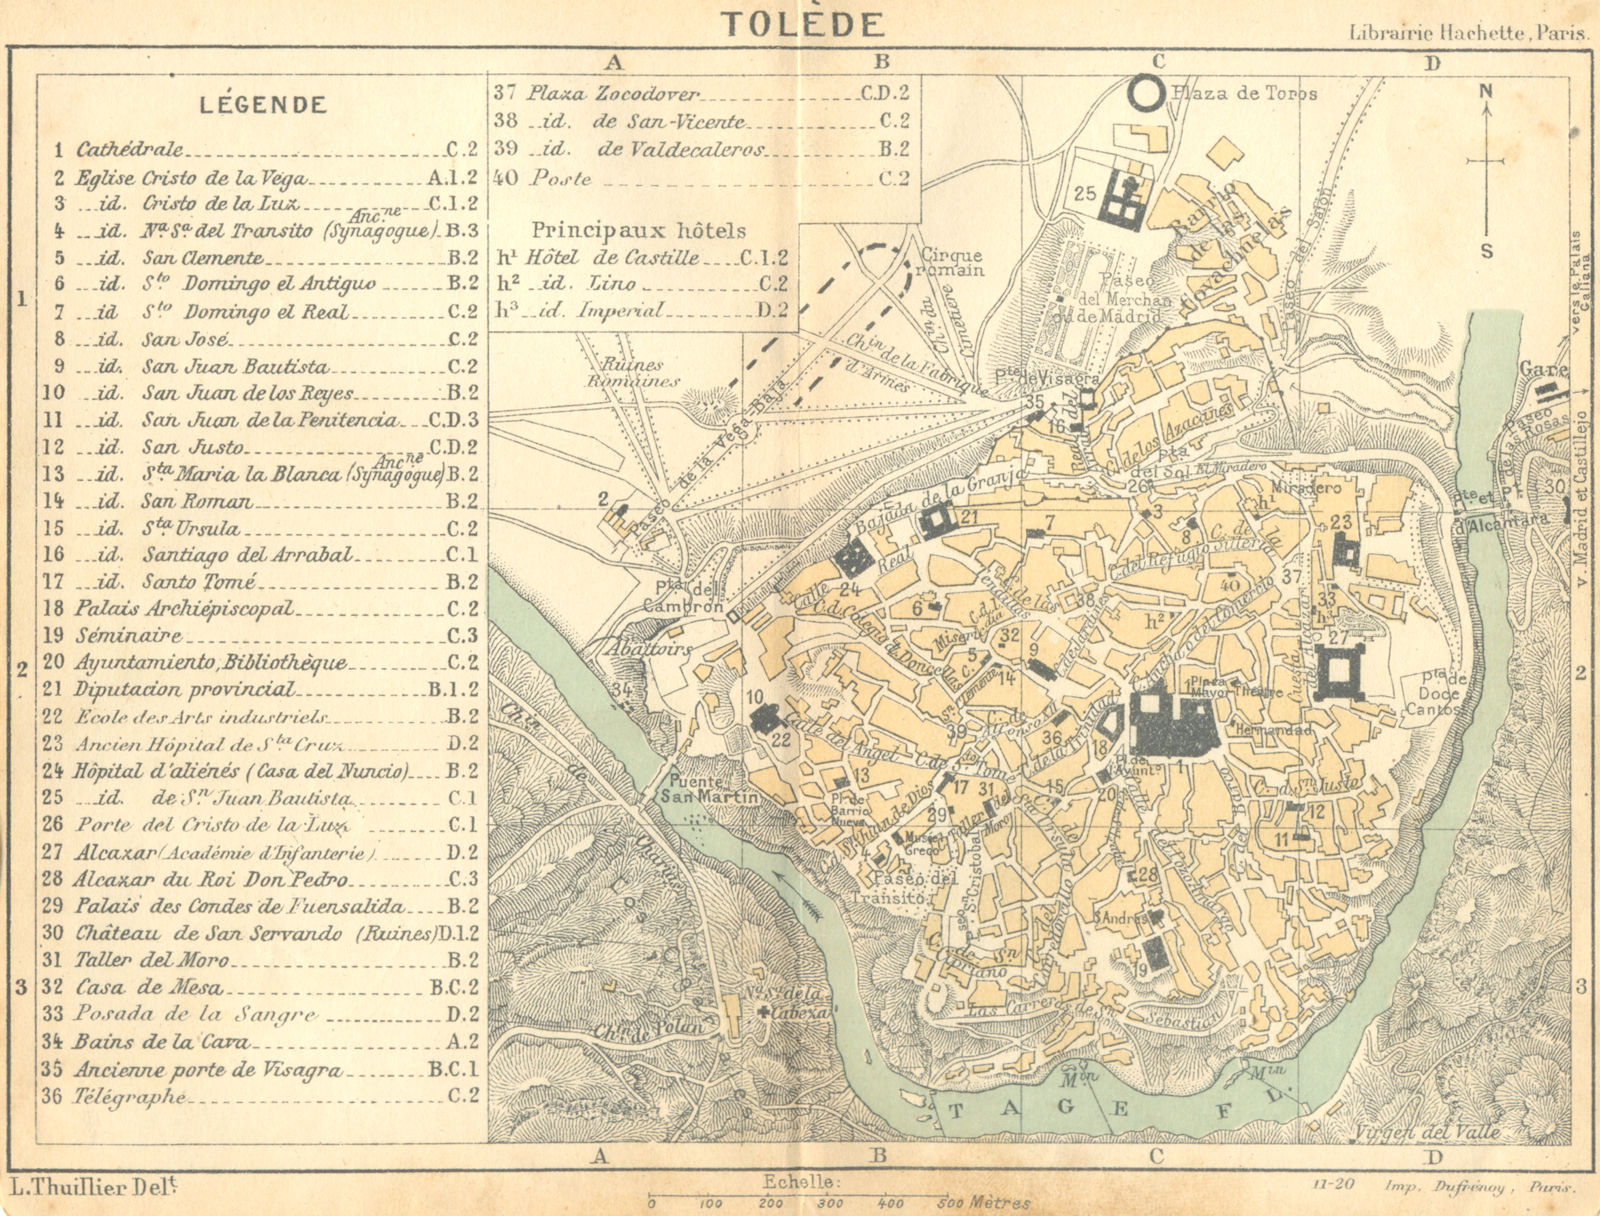 SPAIN. Toledo(Tolede) 1921 old antique vintage map plan chart